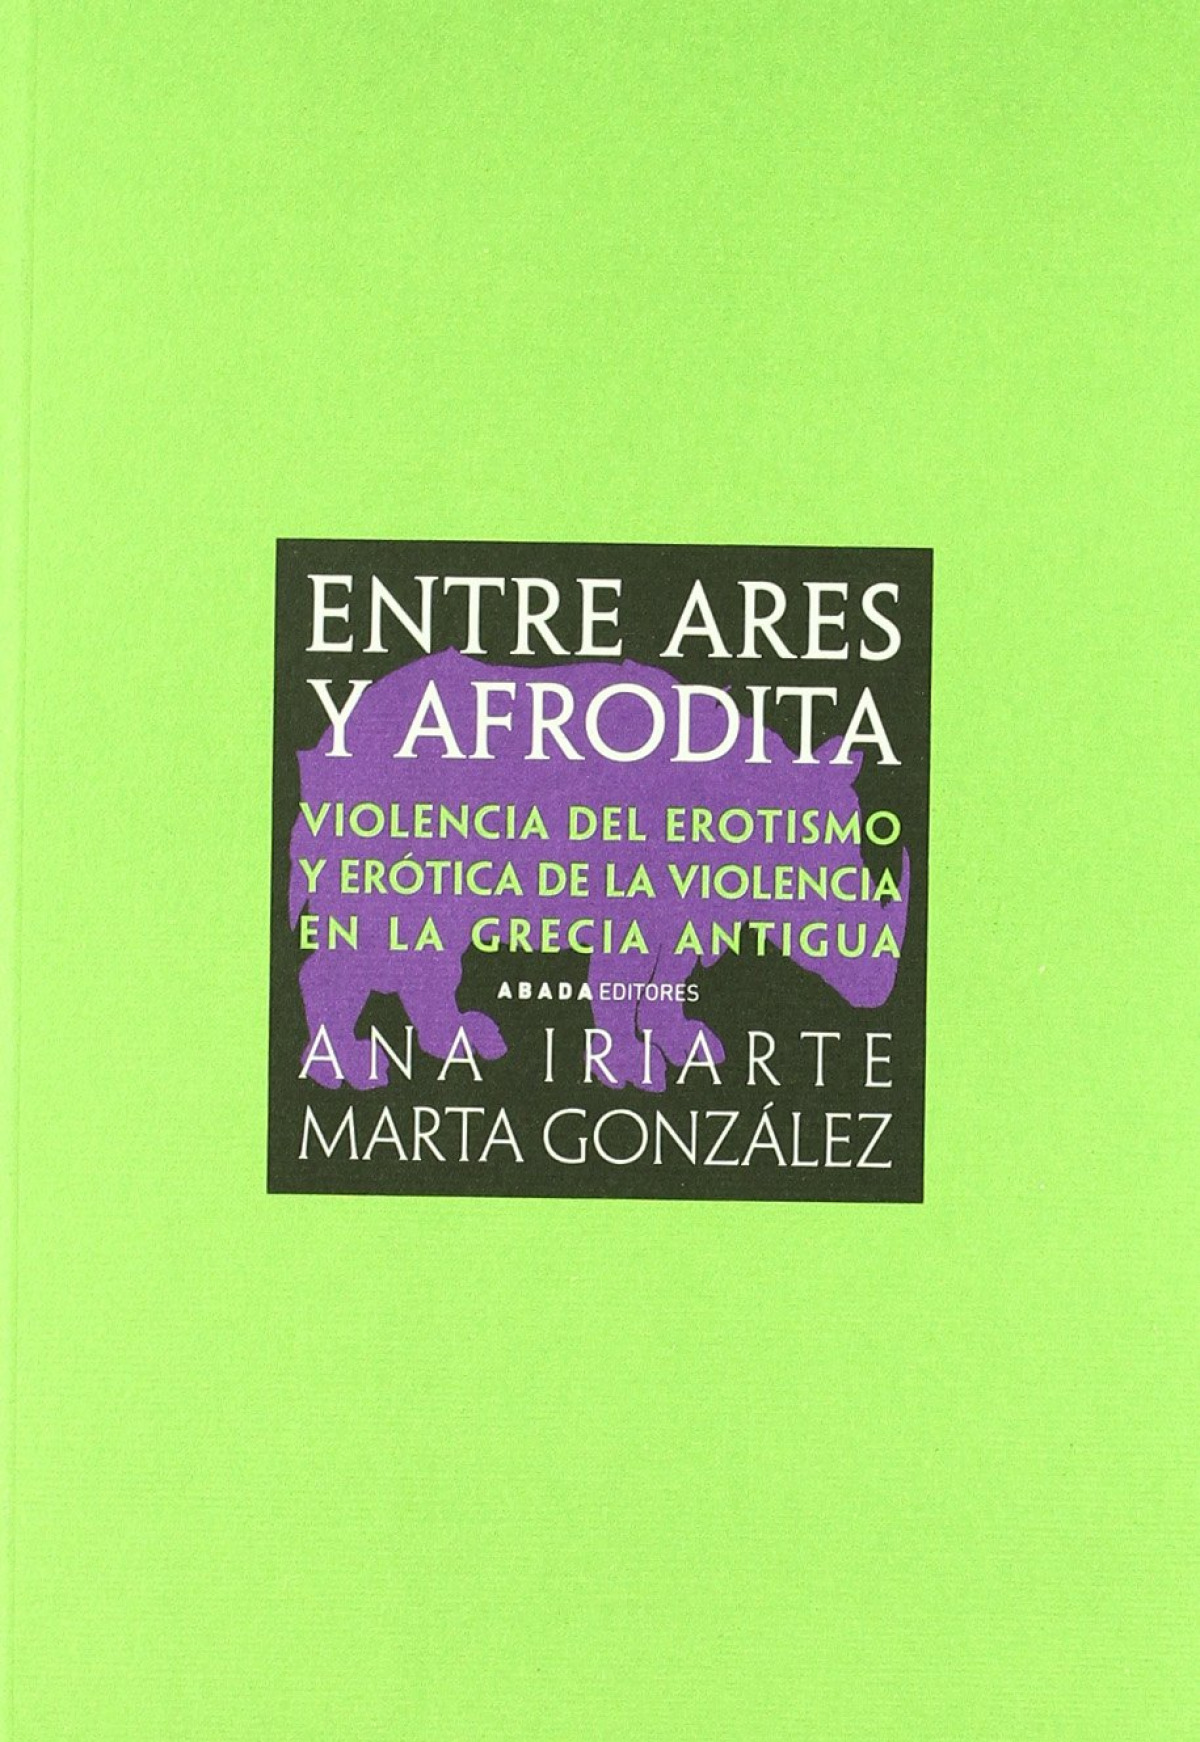 Entre ares y afrodita violencia del erotismo y erotica de la violencia - Iriarte, Ana